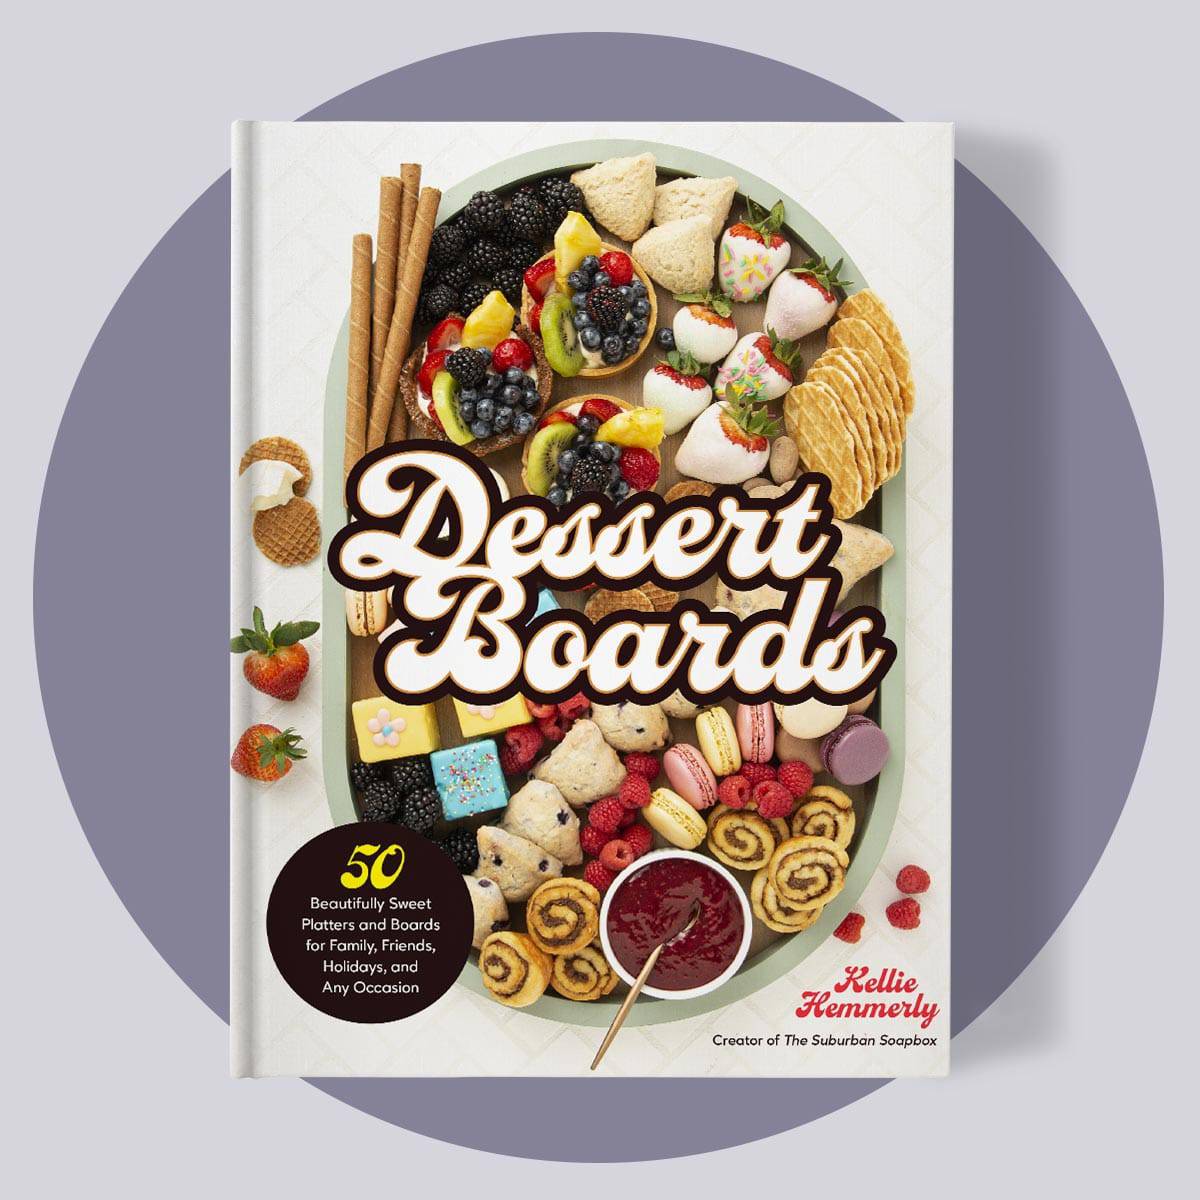 Dessert Boards cookbook cover mockup